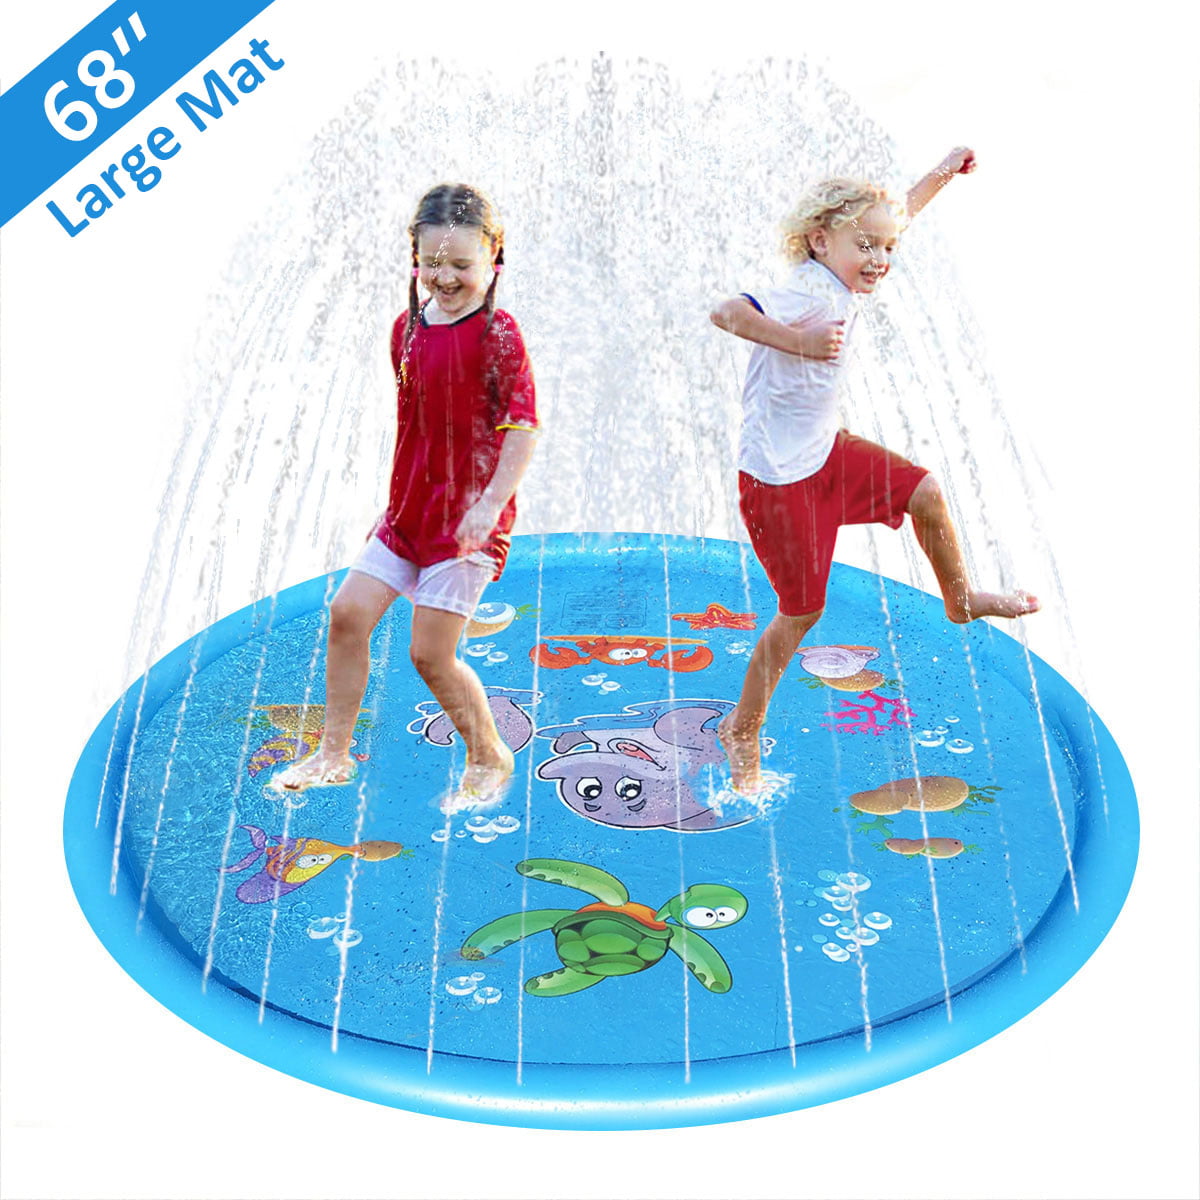 Kids Inflatable Water Spray Pad Sprinkler Mat Round Water Splash Play Pool 2020 